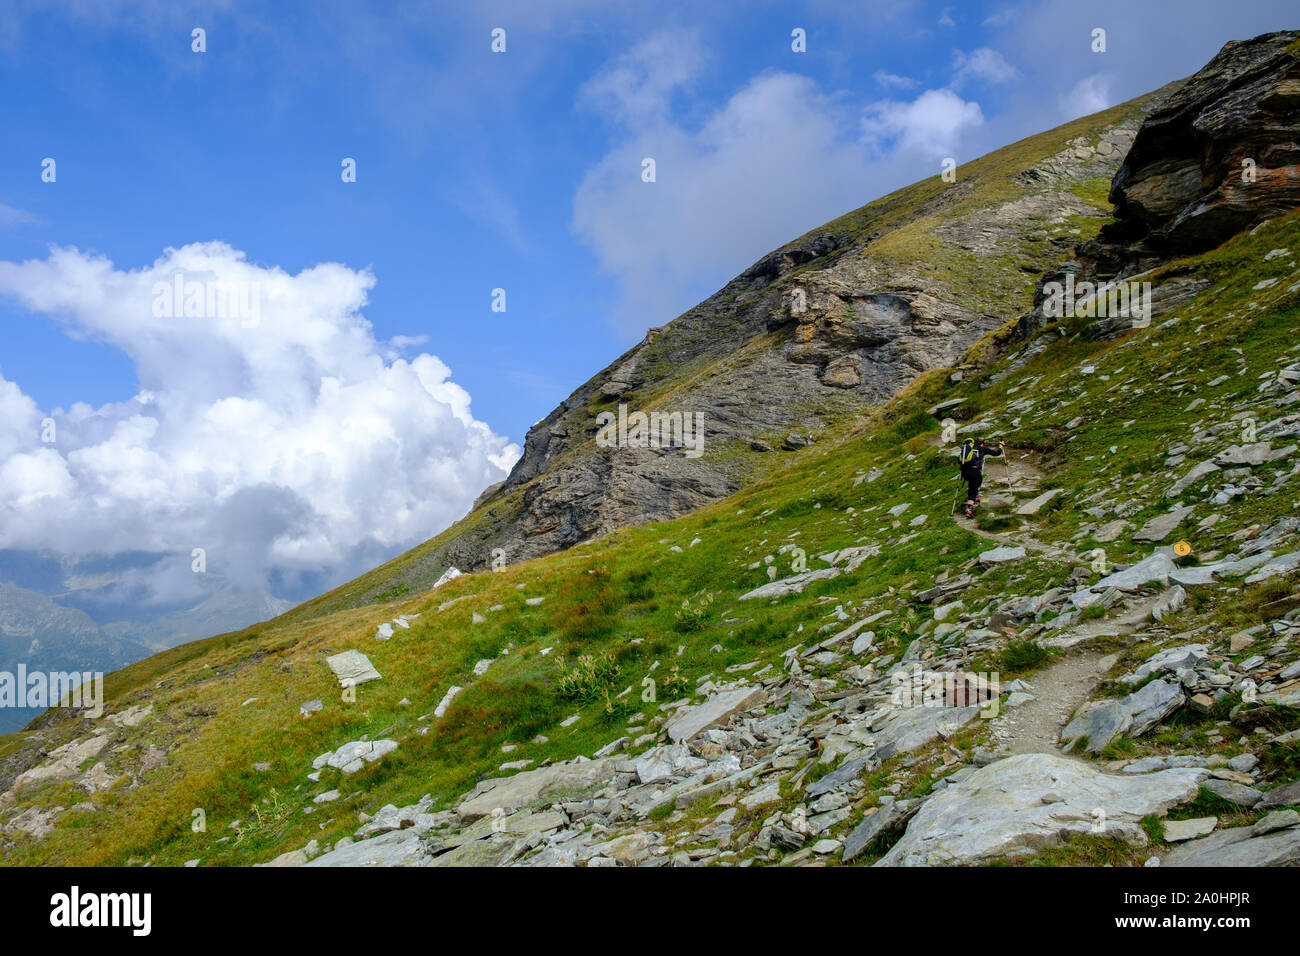 Montée au pic de Pinter, Champoluc, Italie, alpes italiennes Banque D'Images